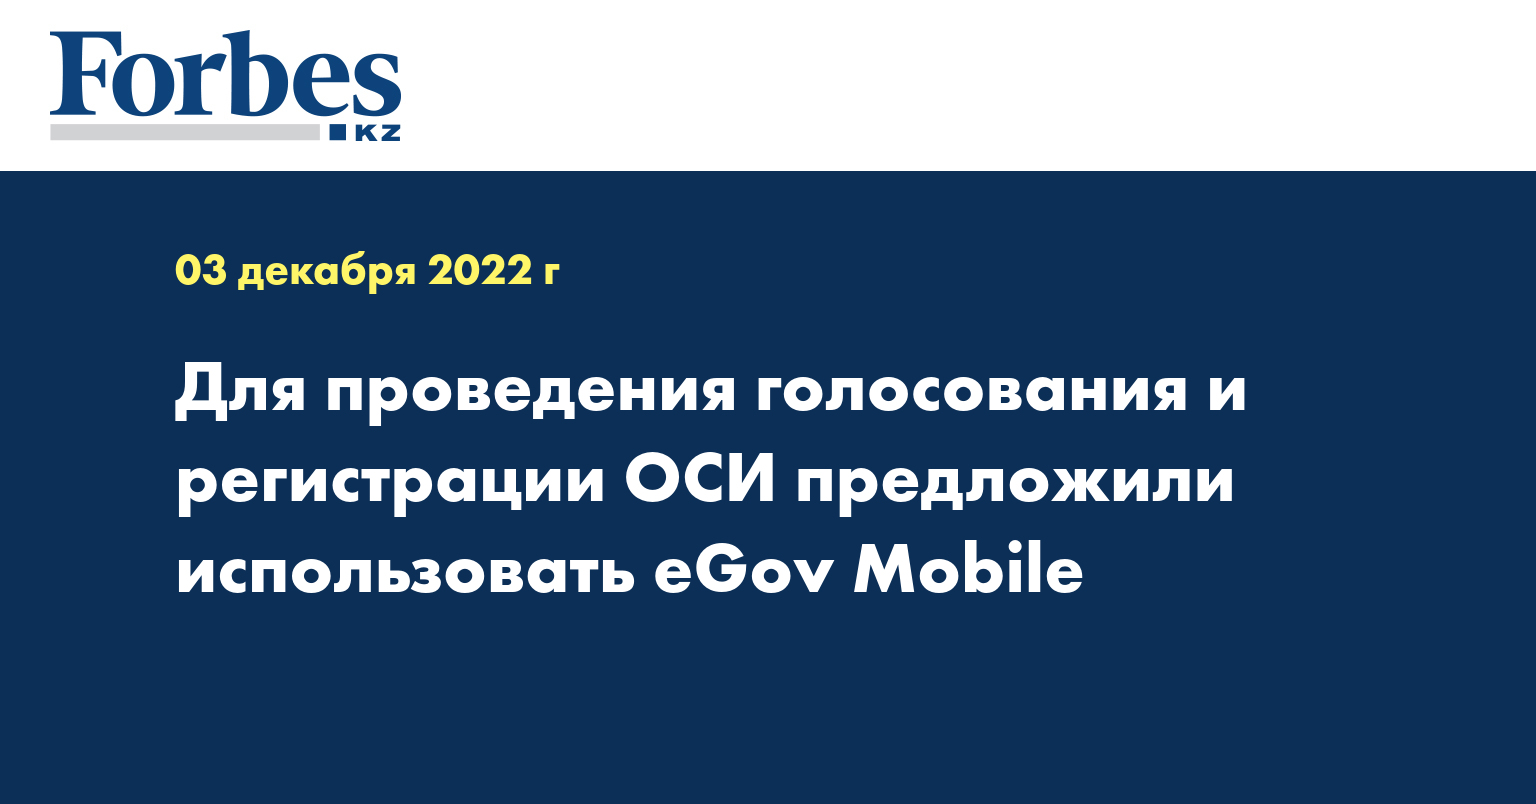 Для проведения голосования и регистрации ОСИ предложили использовать eGov Mobile